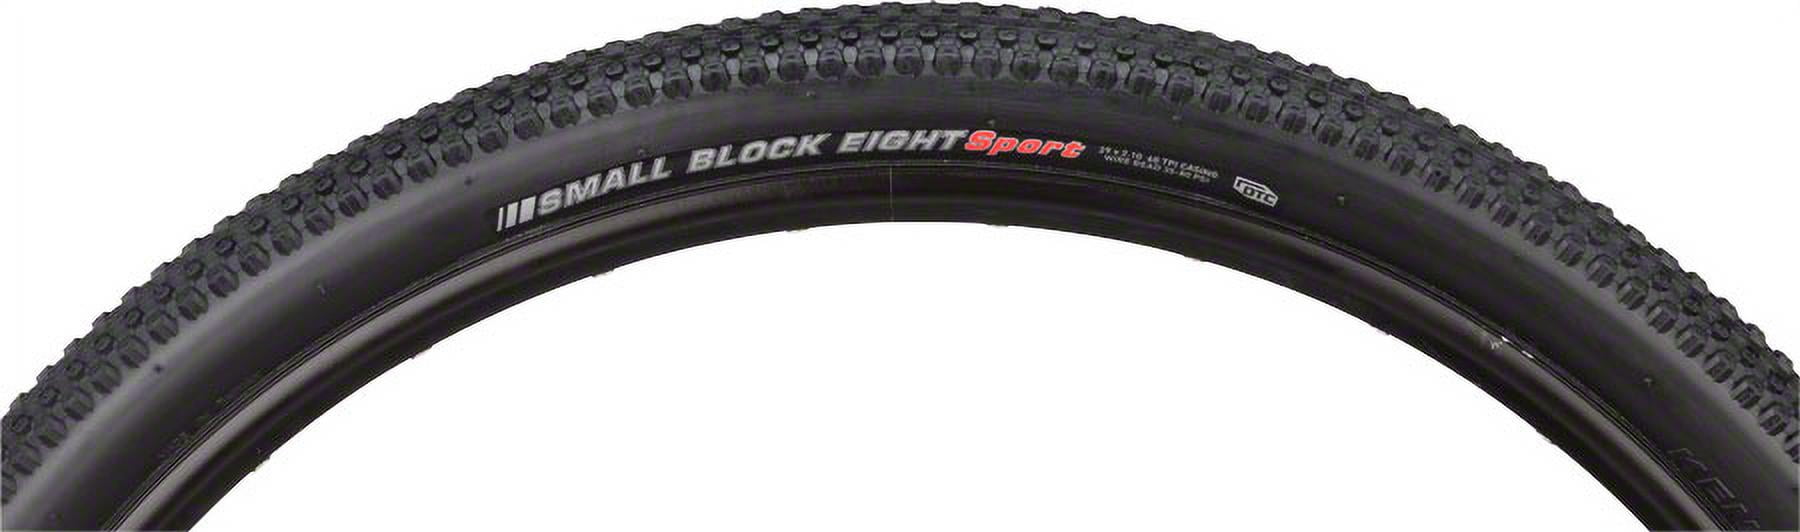 Kenda Small Block 8 Sport Tire 29 x 2.1 DTC Steel Bead Black 